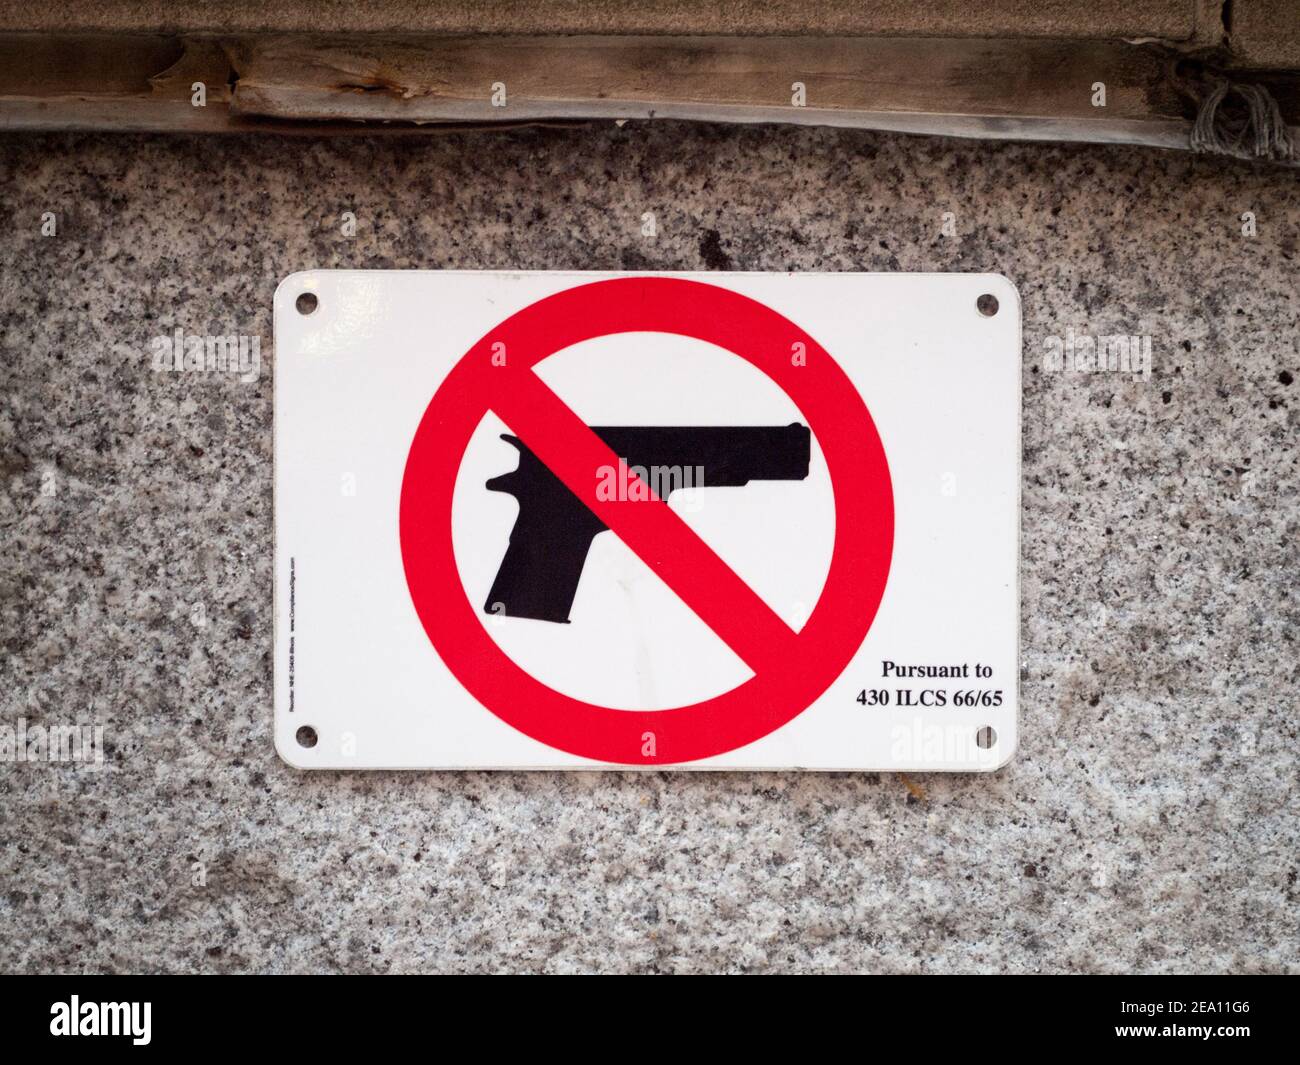 Un signo oficial aprobado por la Política del Estado de Illinois que prohíbe el transporte de armas de fuego. Chicago, Illinois. (No se permiten armas, armas de fuego, control de armas). Foto de stock